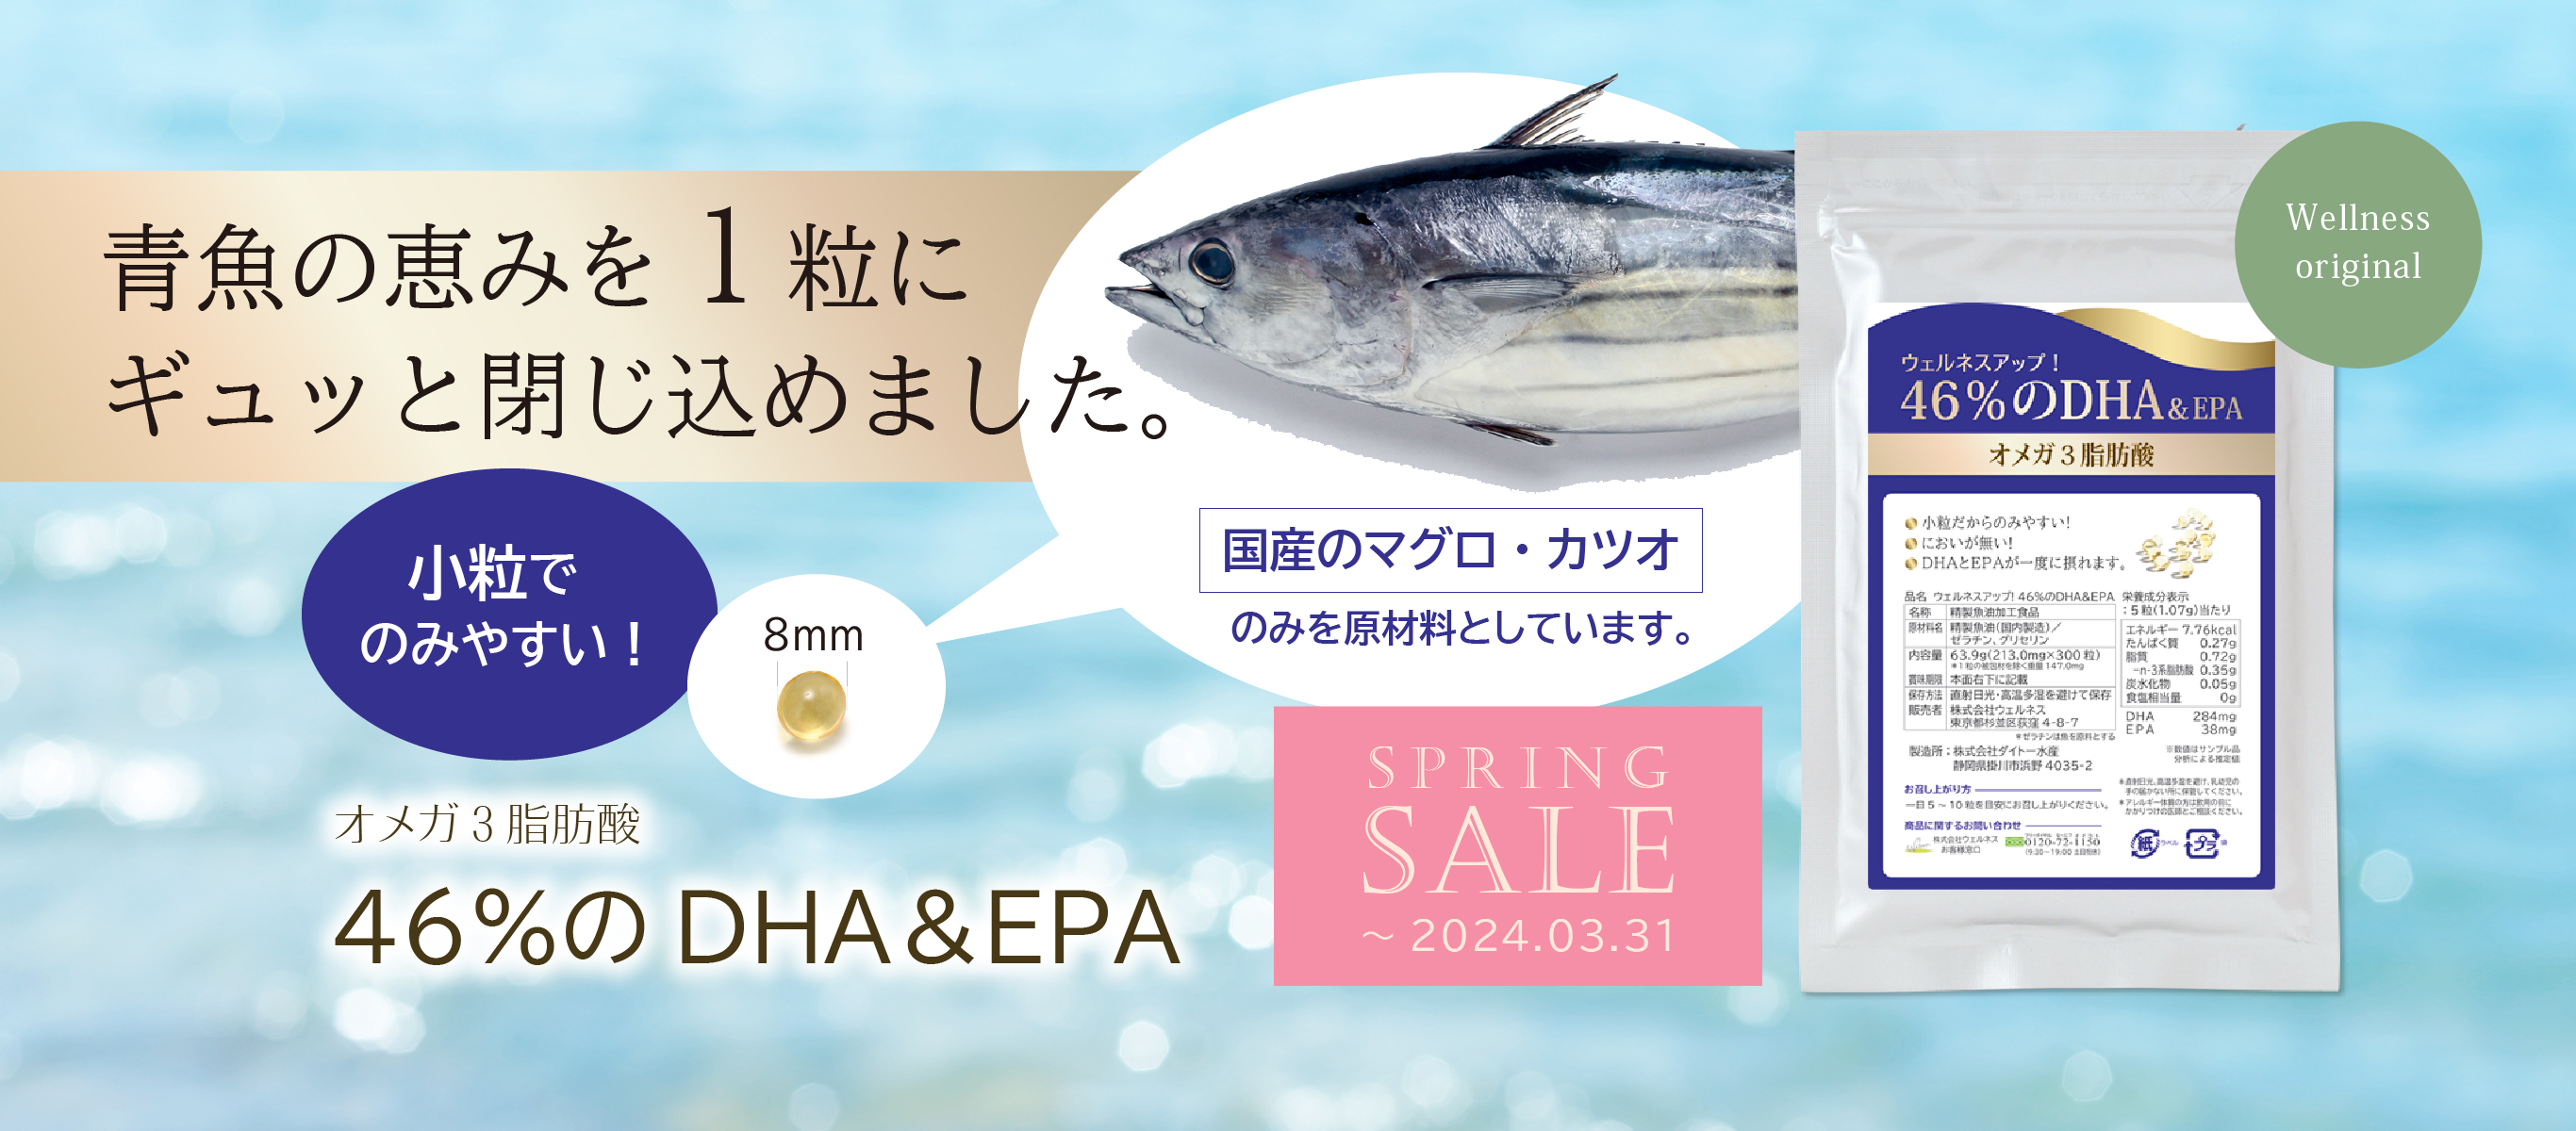 青魚の恵みを１粒にギュッと閉じ込めました 小粒でのみやすいオメガ３脂肪酸 国産のマグロ・カツオのみを原材料としています 46％のDHA＆EPA 3月31日まで期間限定特価